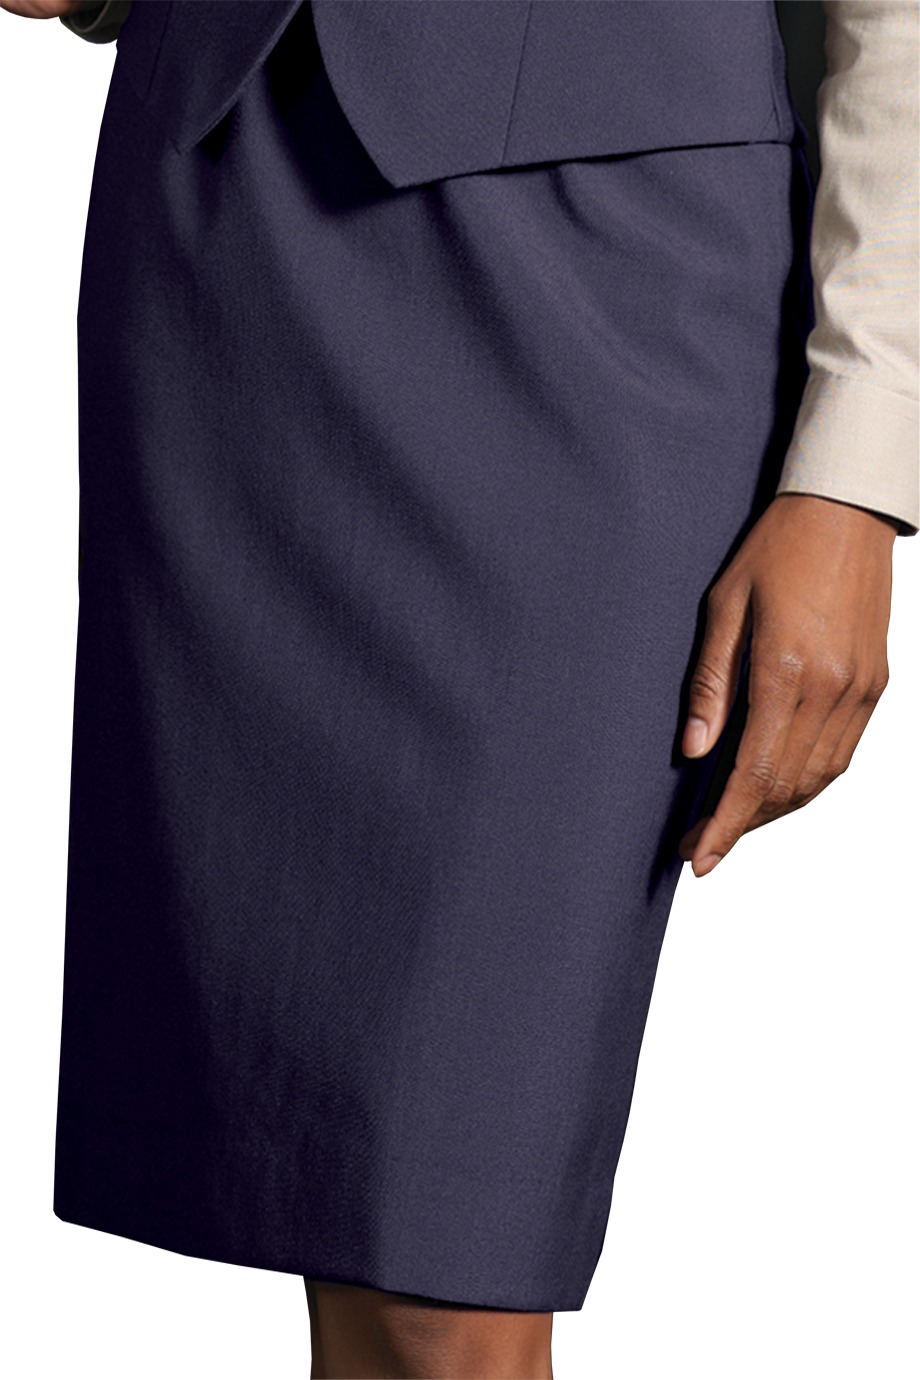 Edwards Garment 9789 - Women's Wool Blend Dress Skirt